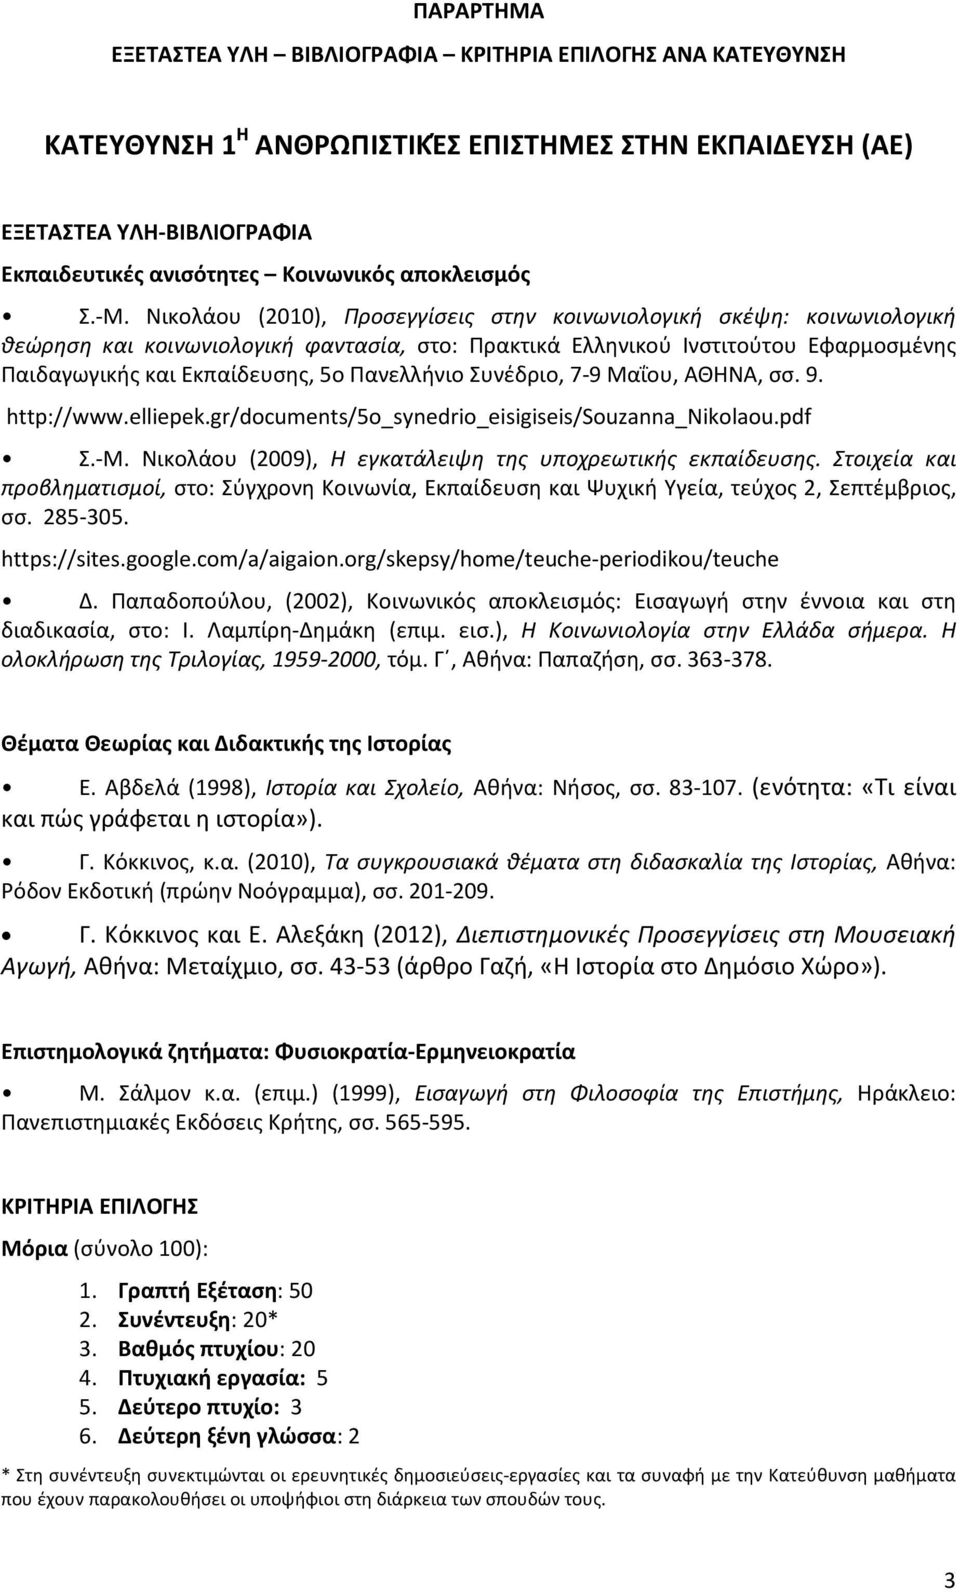 Πανελλήνιο Συνέδριο, 7-9 Μαΐου, ΑΘΗΝΑ, σσ. 9. http://www.elliepek.gr/documents/5o_synedrio_eisigiseis/souzanna_nikolaou.pdf Σ.-Μ. Νικολάου (2009), Η εγκατάλειψη της υποχρεωτικής εκπαίδευσης.